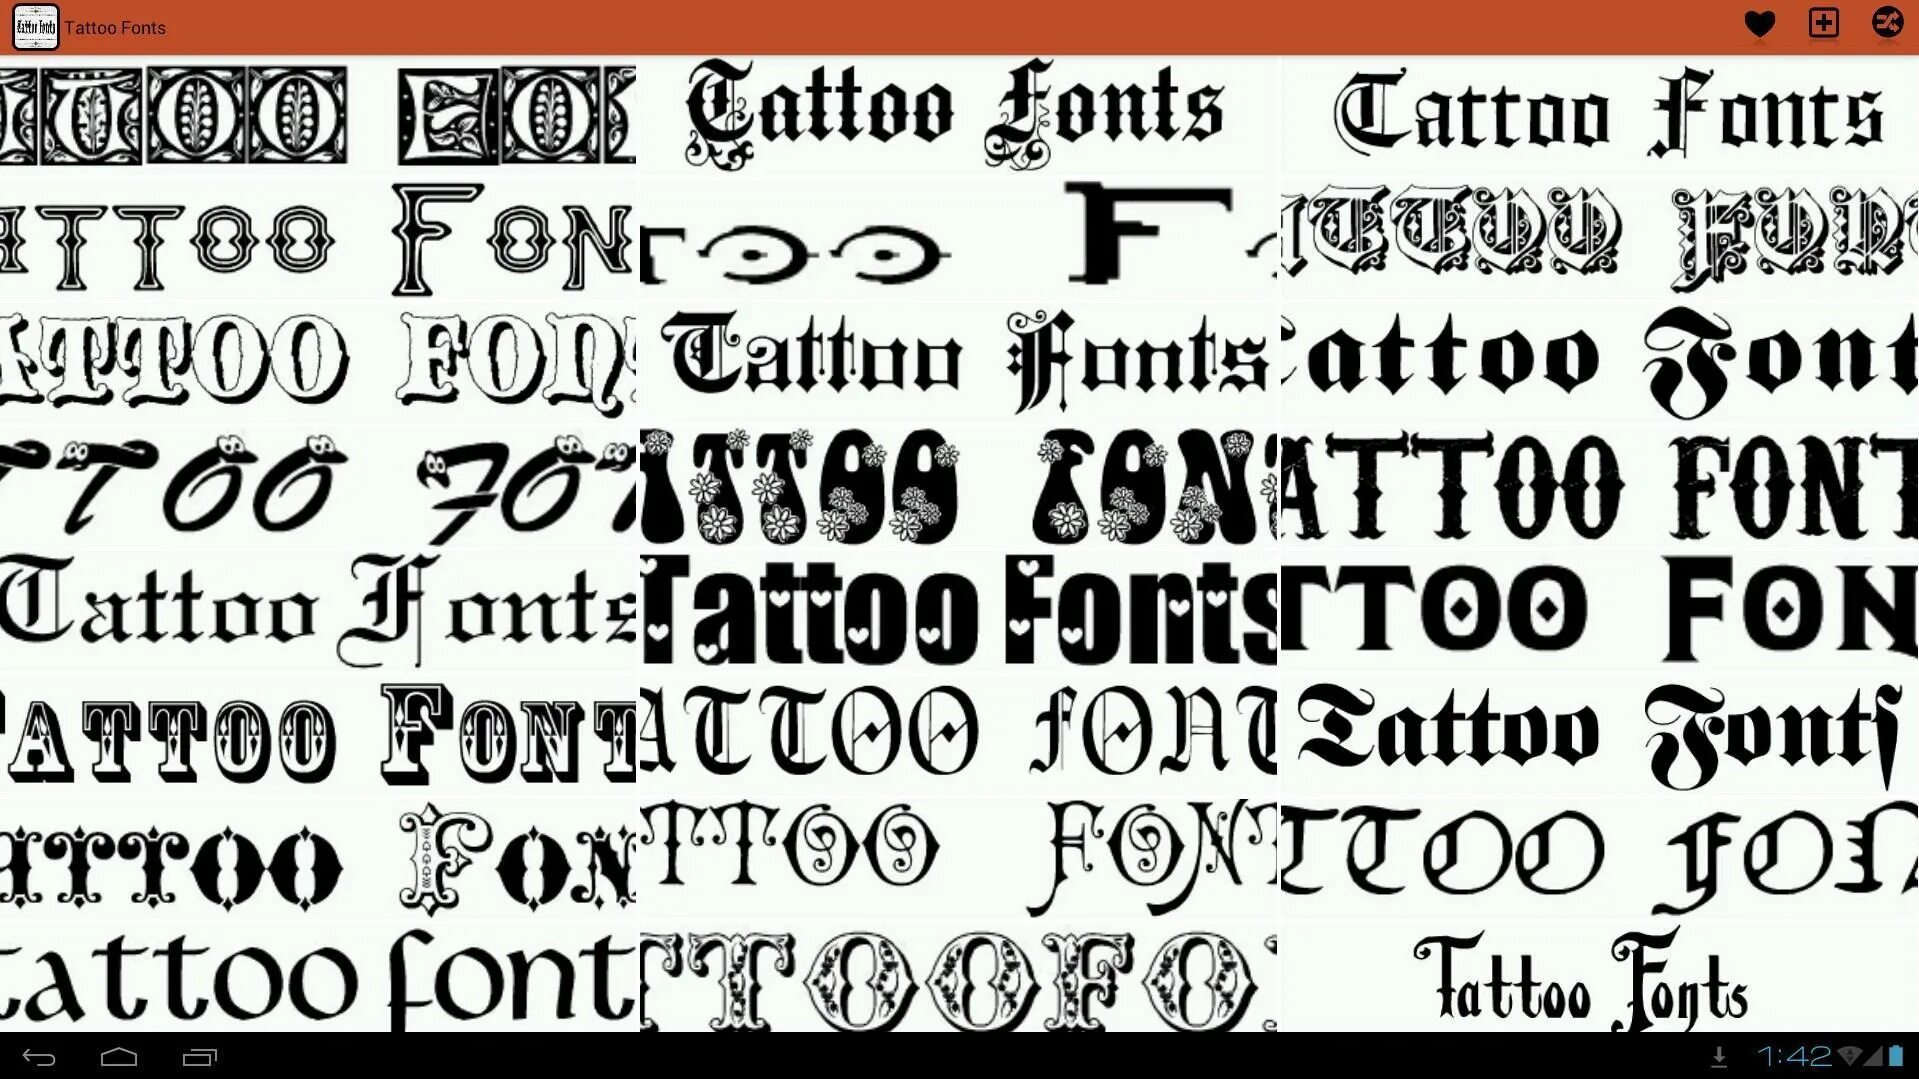 Красивый шрифт для ников в игре. Шрифты для тату. Стили шрифтов. Необычные шрифты для тату. Современные шрифты для тату.